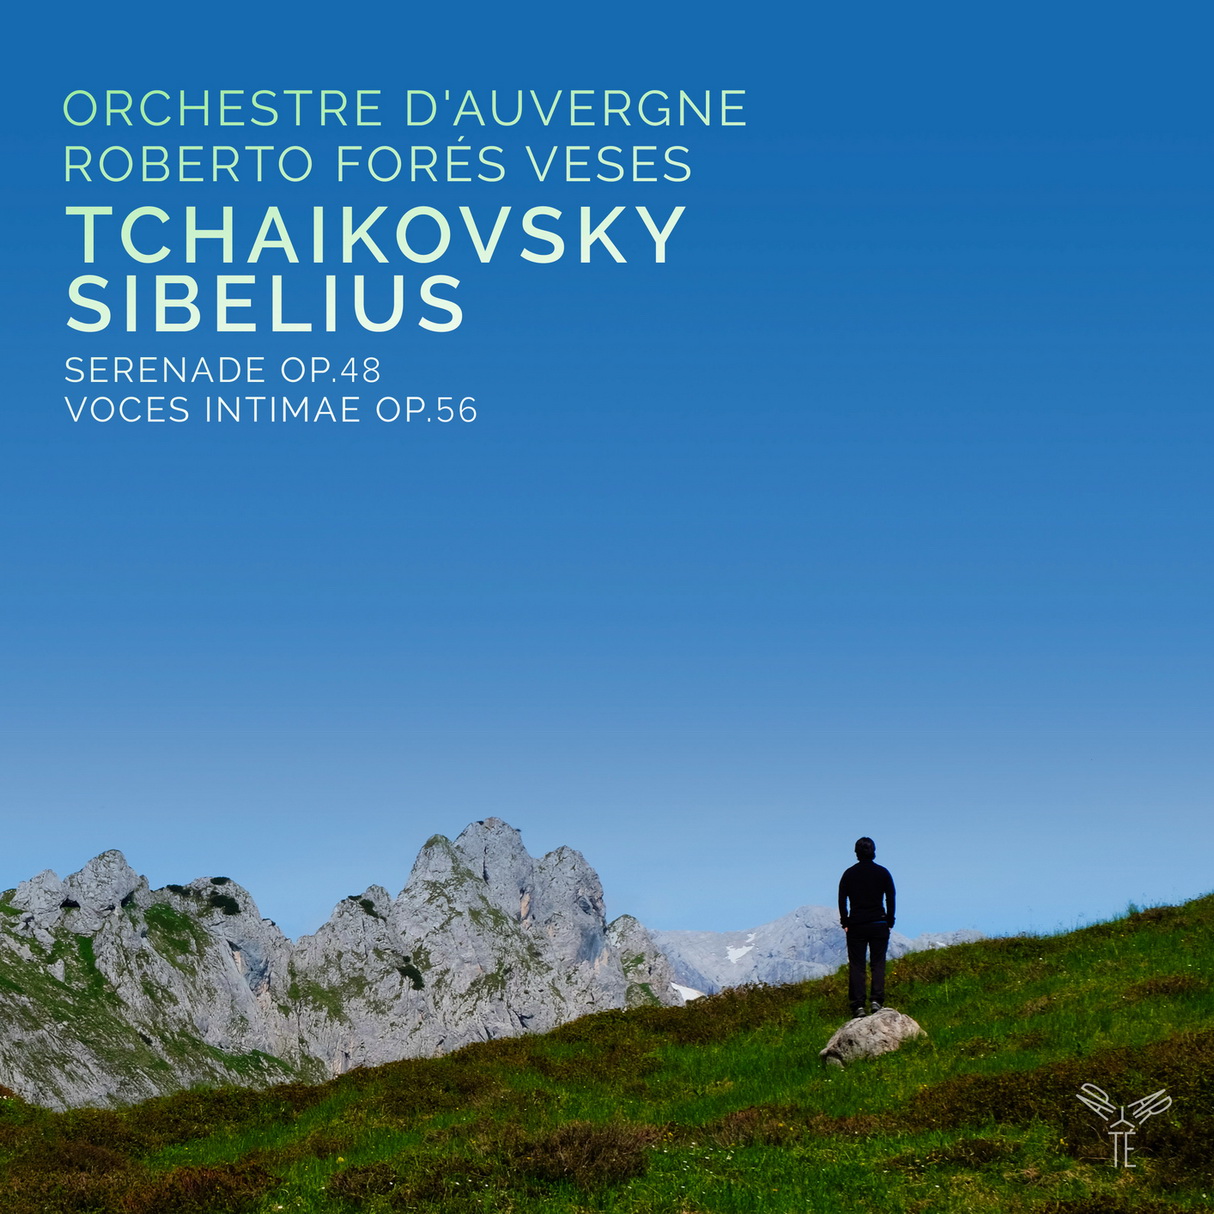 Orchestre d’Auvergne & Roberto Fores Veses - Tchaikovsky & Sibelius (2017) [Qobuz FLAC 24bit/96kHz]